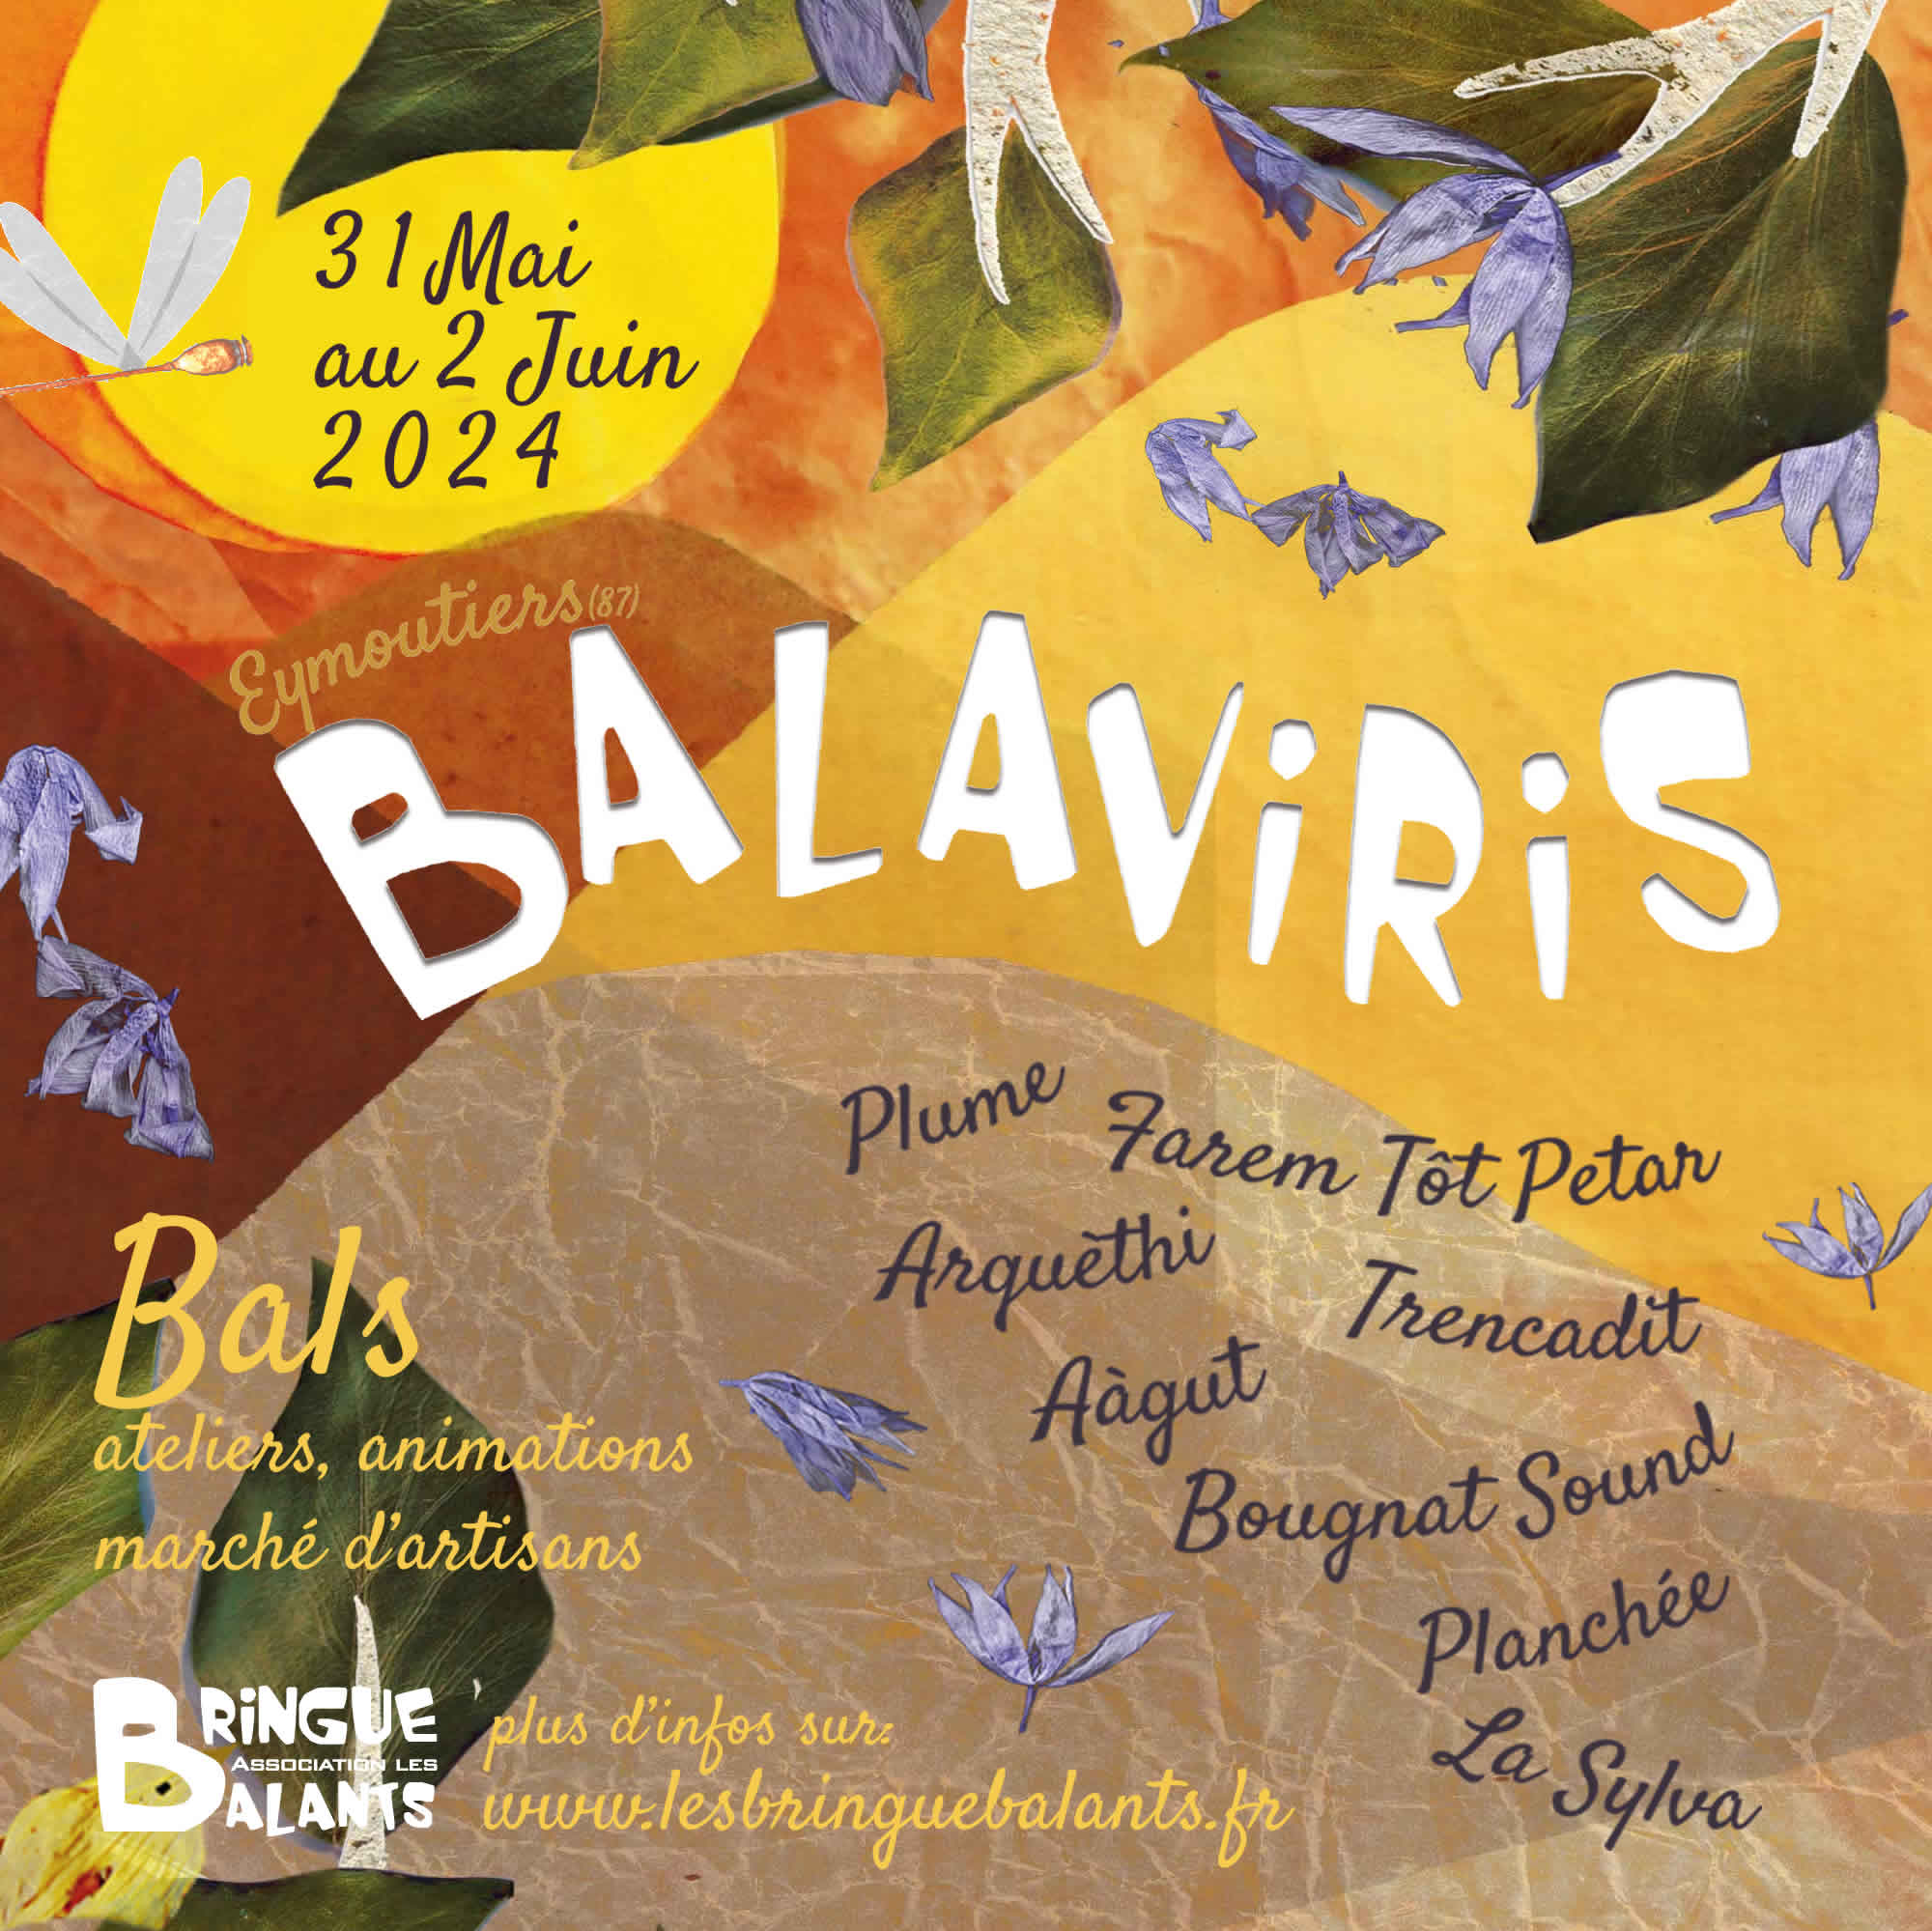 Balaviris concert AAGUT dimanche 2 juin